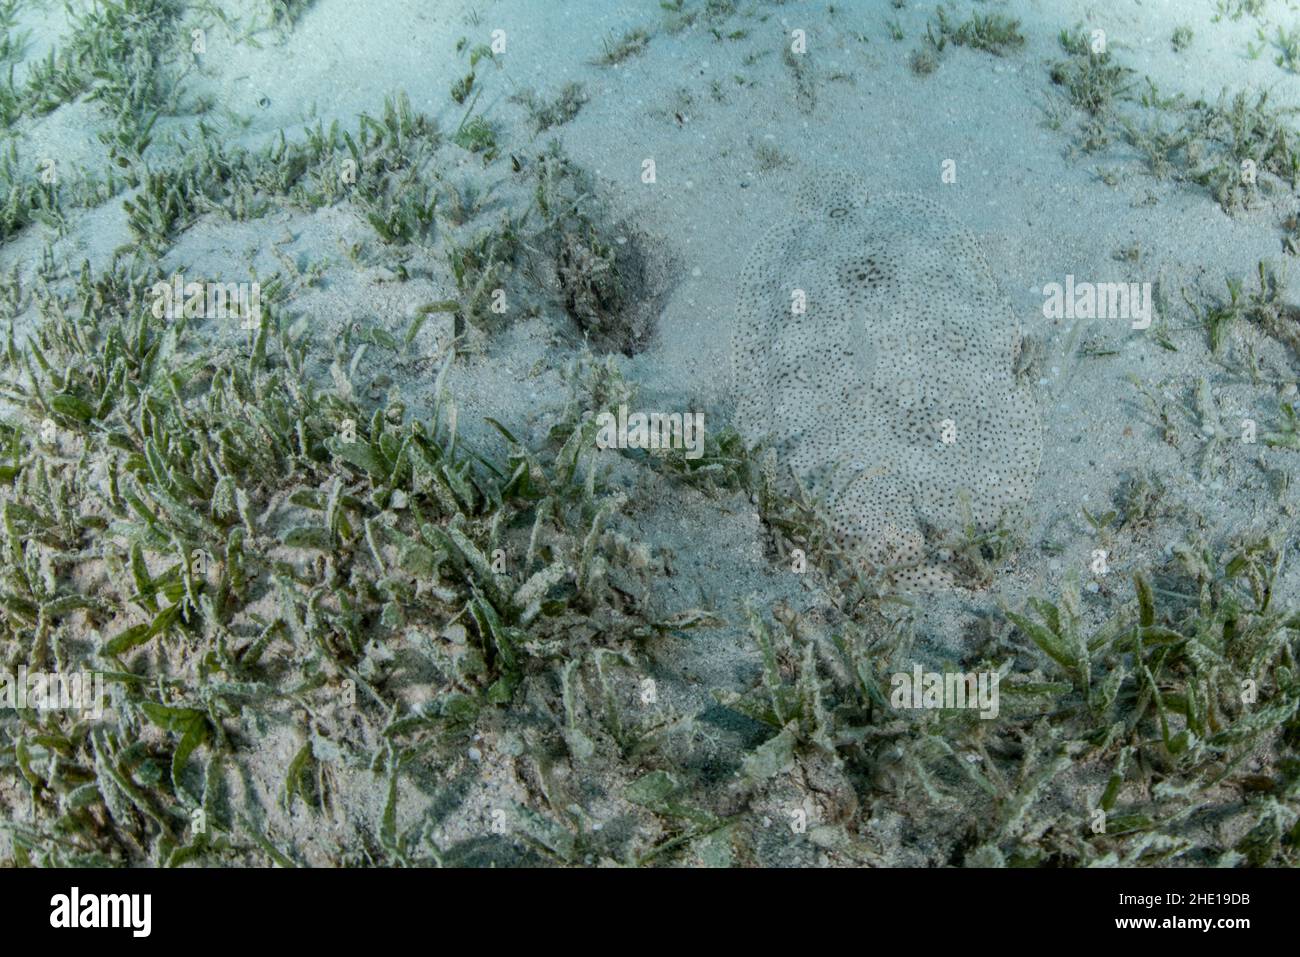 Die finenlose Sohle (Pardachirus marmoratus) ist ein unglaublich gut getarnter Fisch am Meeresboden, der auf Sand inmitten von Seegras versteckt ist. Stockfoto